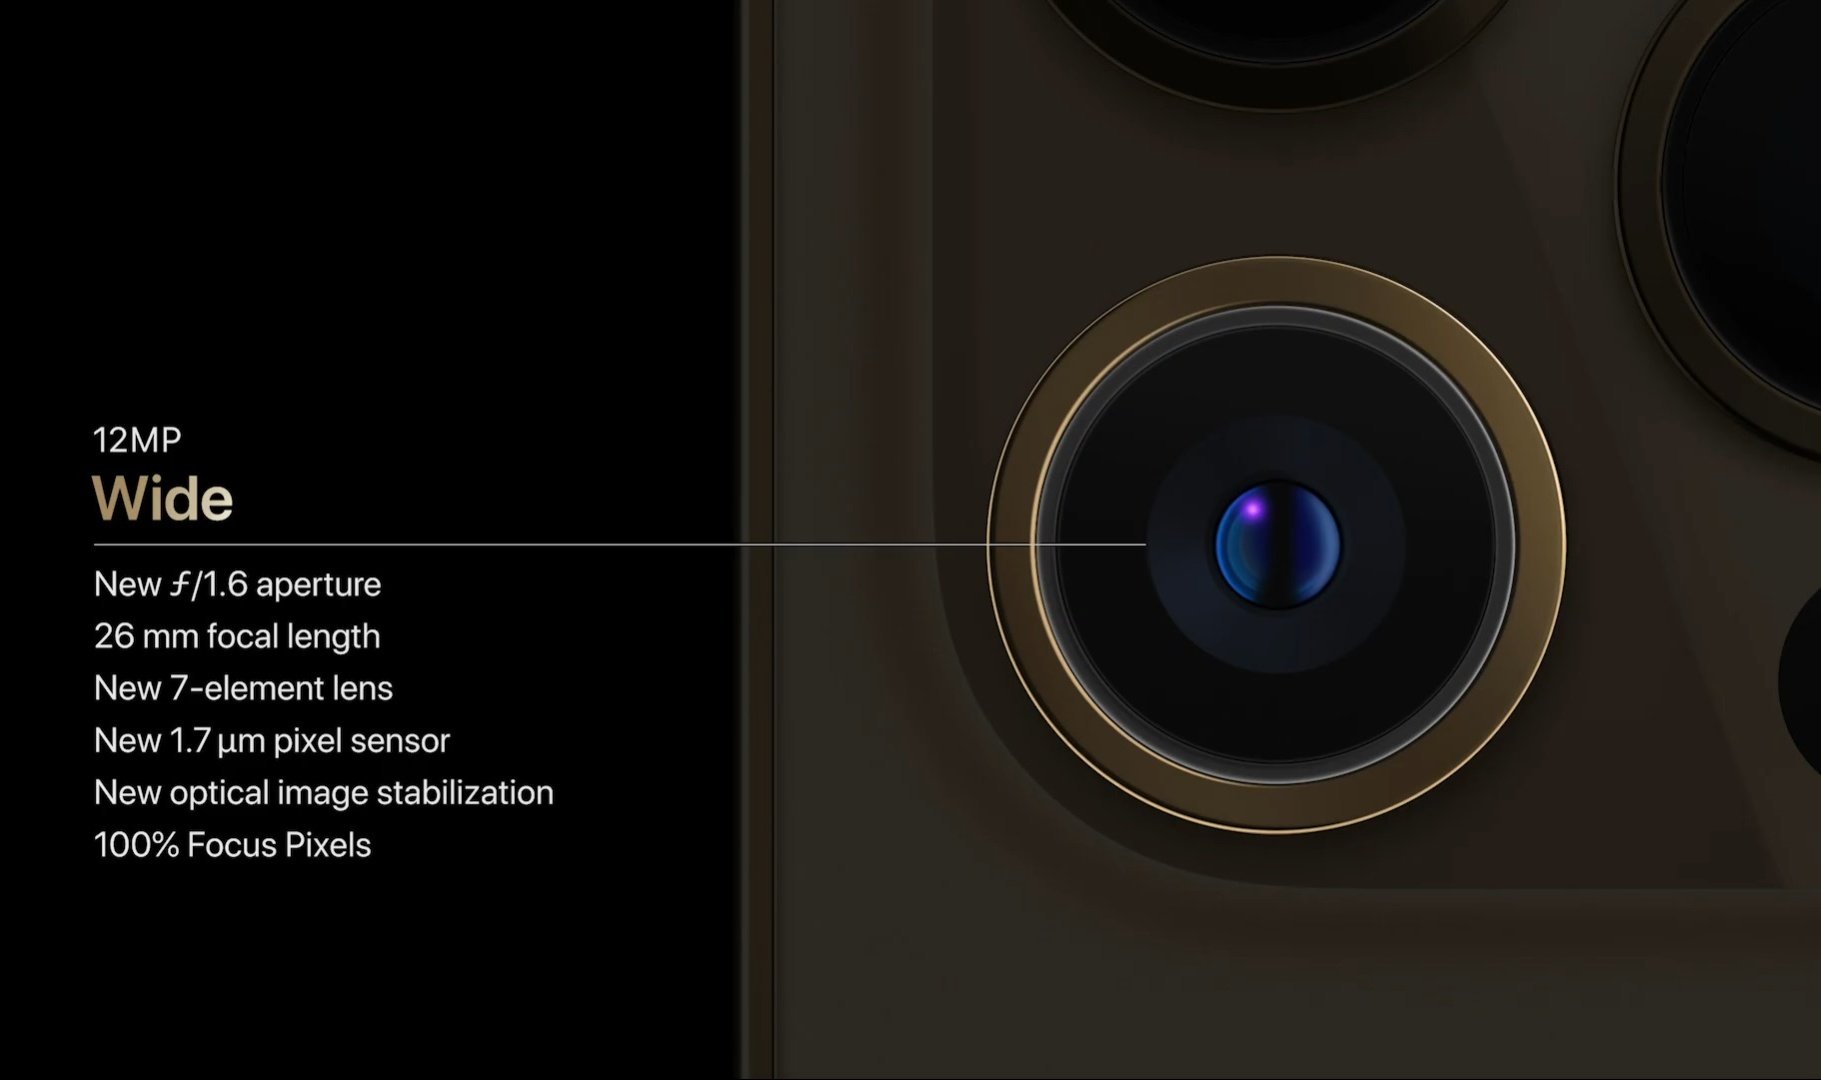 Thử nghiệm chuyên sâu camera của iPhone 12 Pro: Camera góc rộng tốt hơn nhưng không nhiều, nhưng khác biệt ở Night Mode